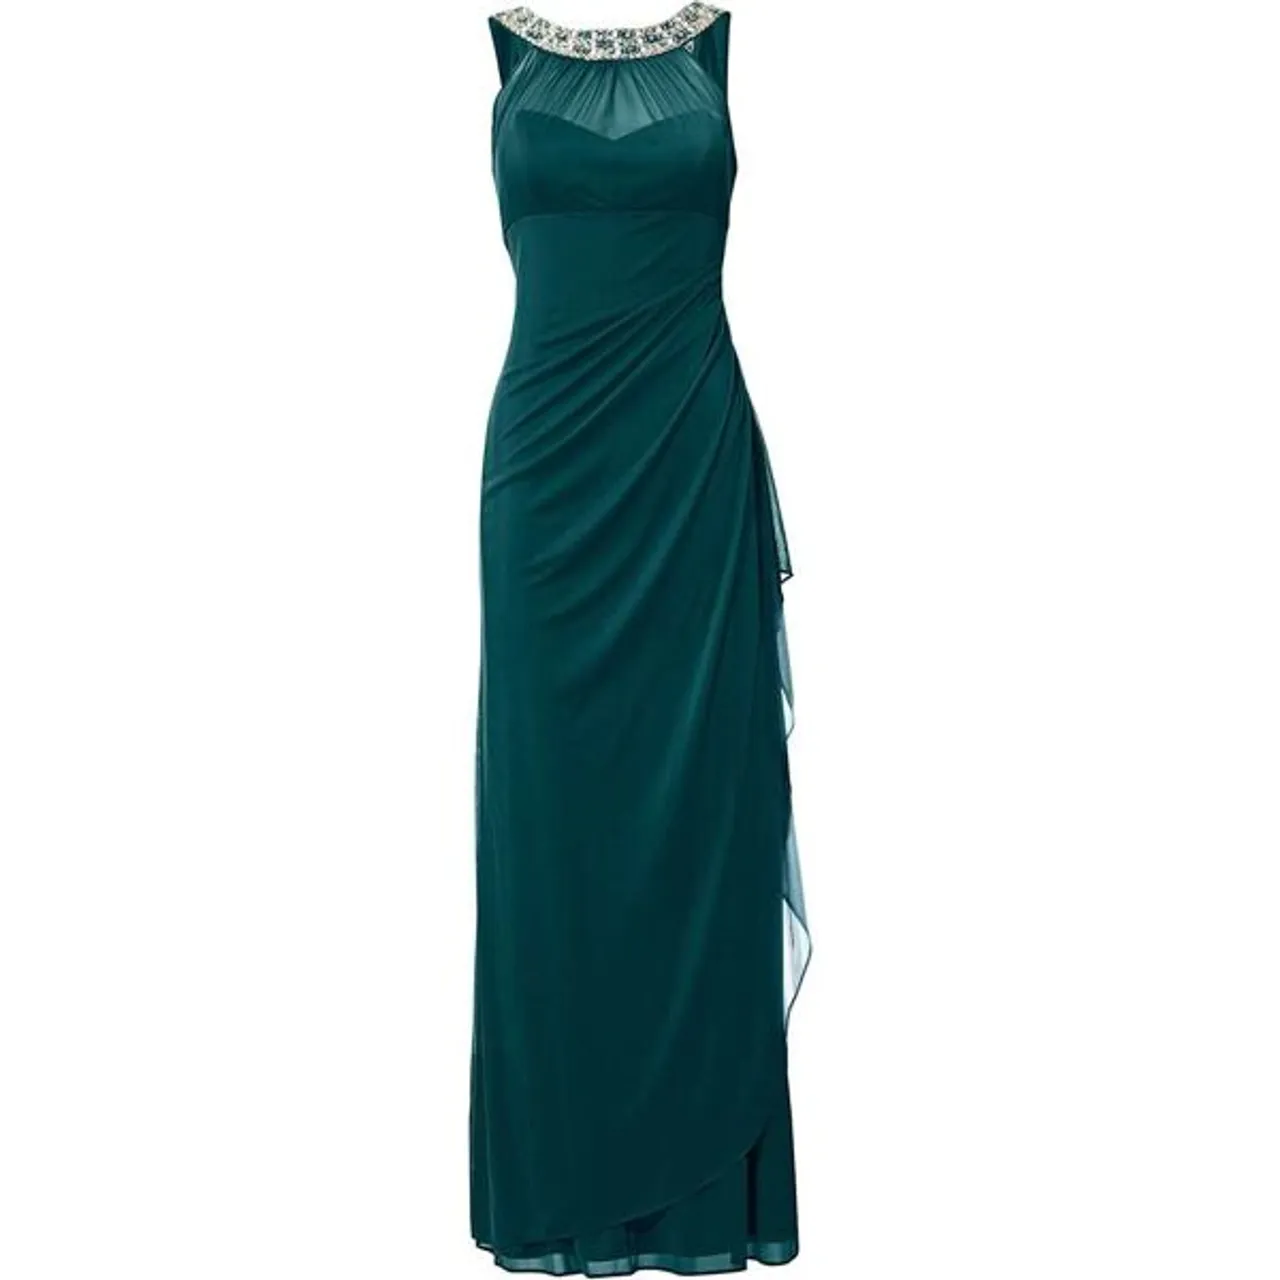 Abendkleid HEINE "Abendkleid" Gr. 44, Normalgrößen, grün (smaragd) Damen Kleider Lange